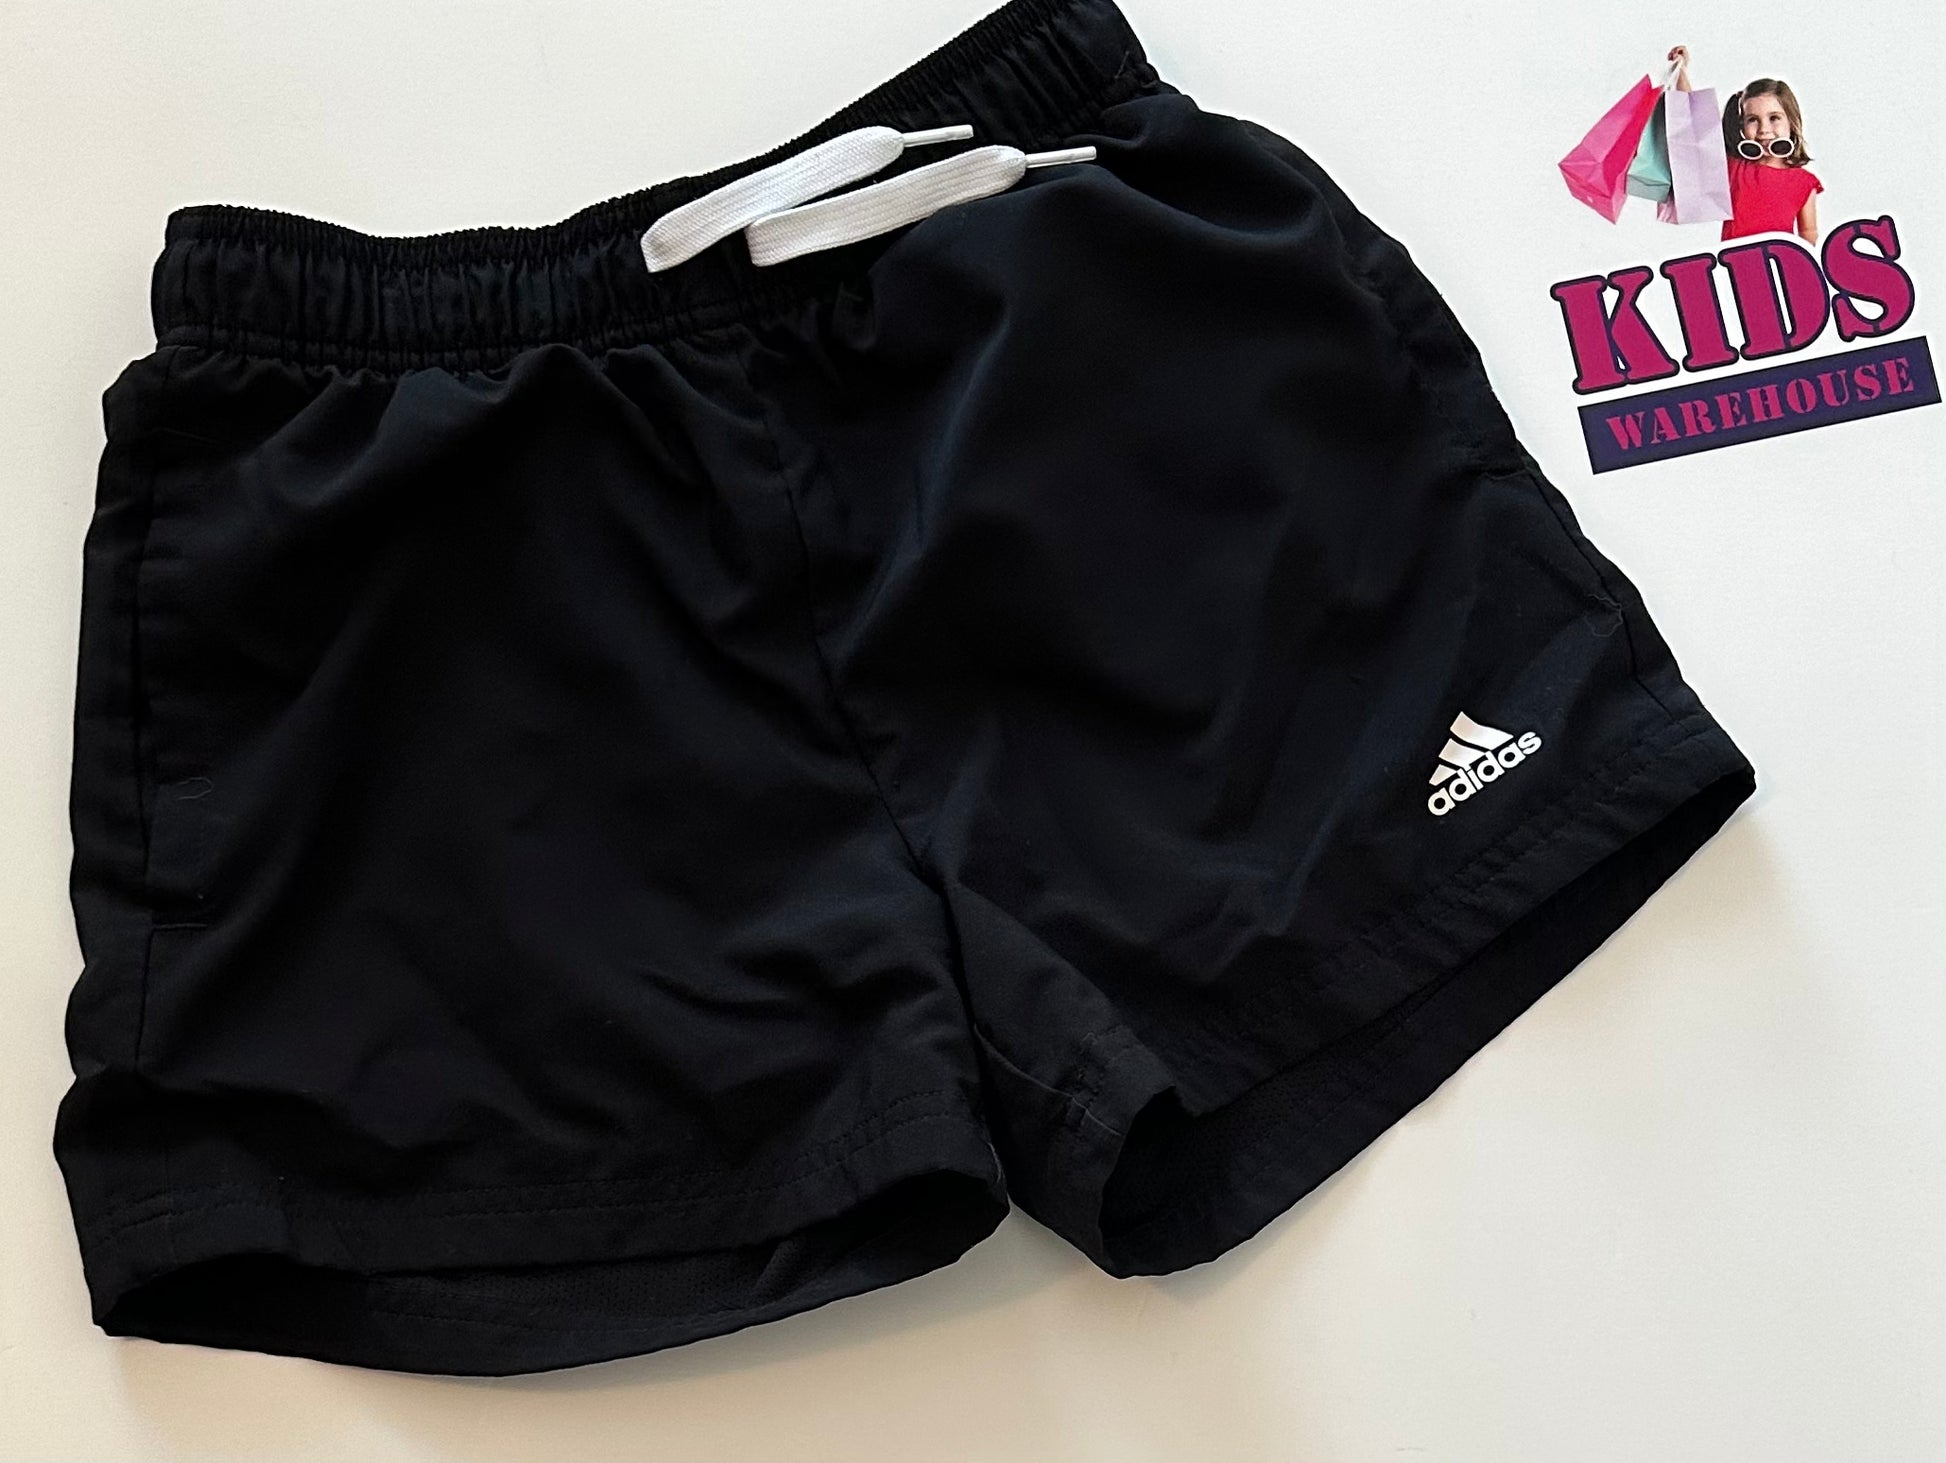 Adidas Black Shorts Size 12 – Kids Warehouse AU